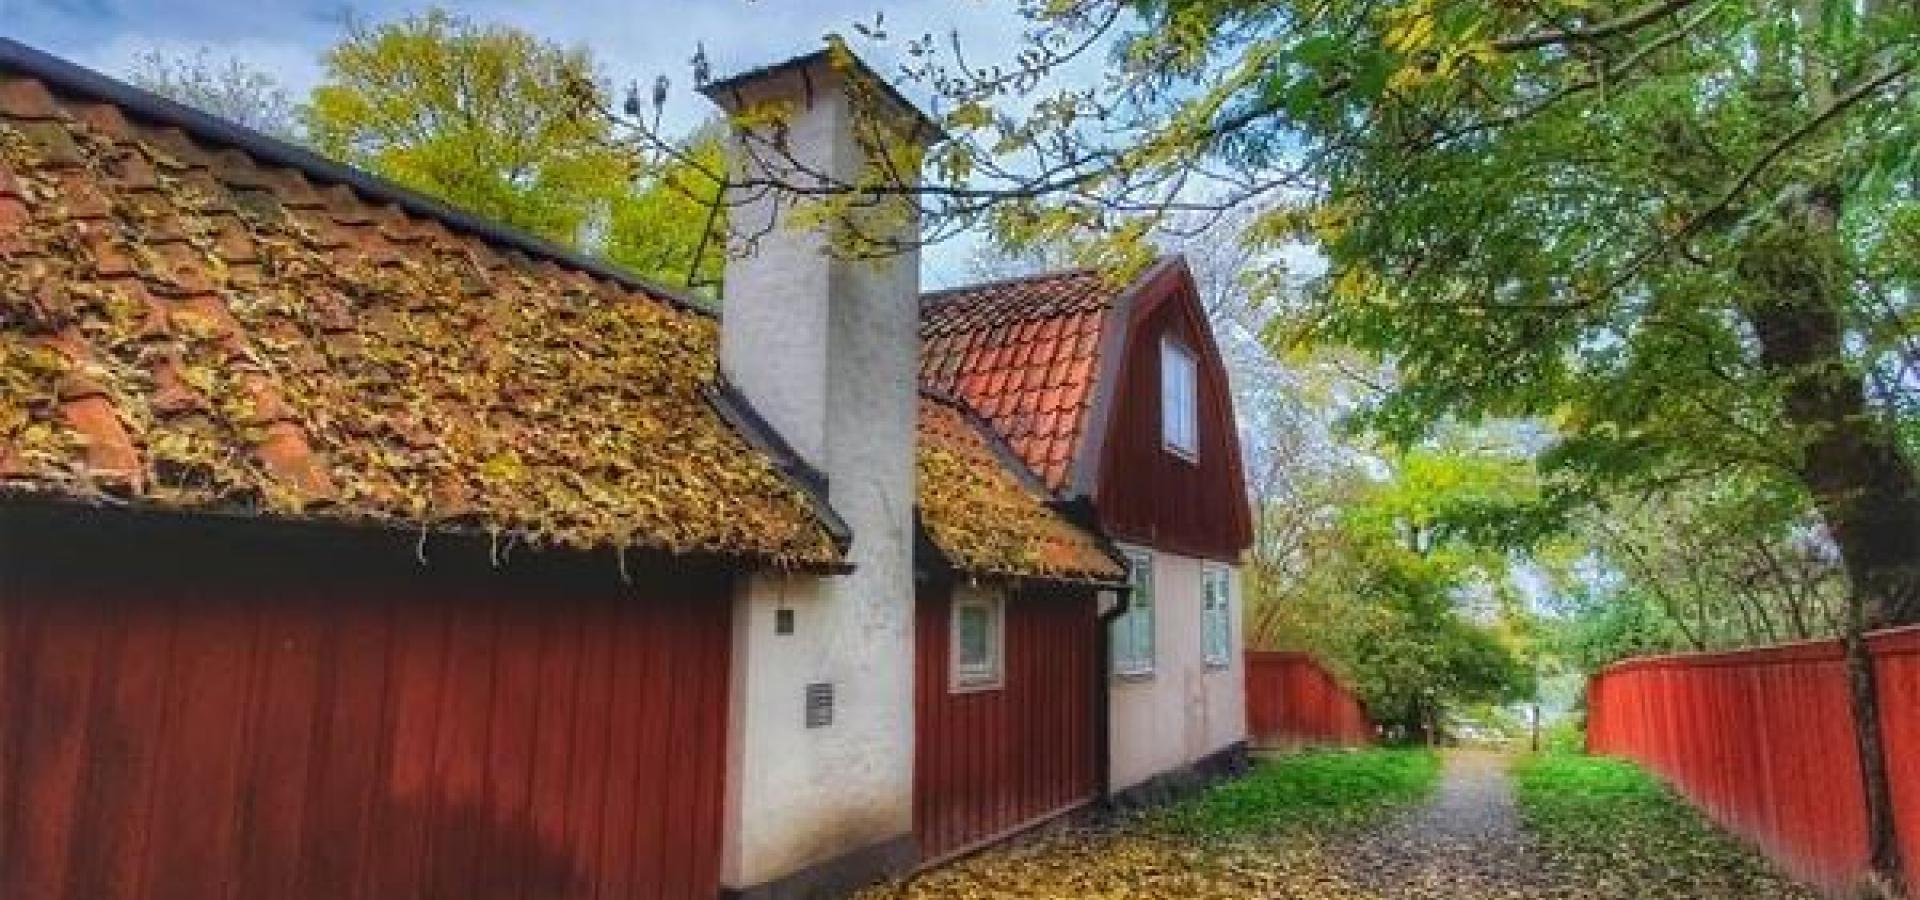 Ett gammalt rött hus längsmed en väg med höstlöv på